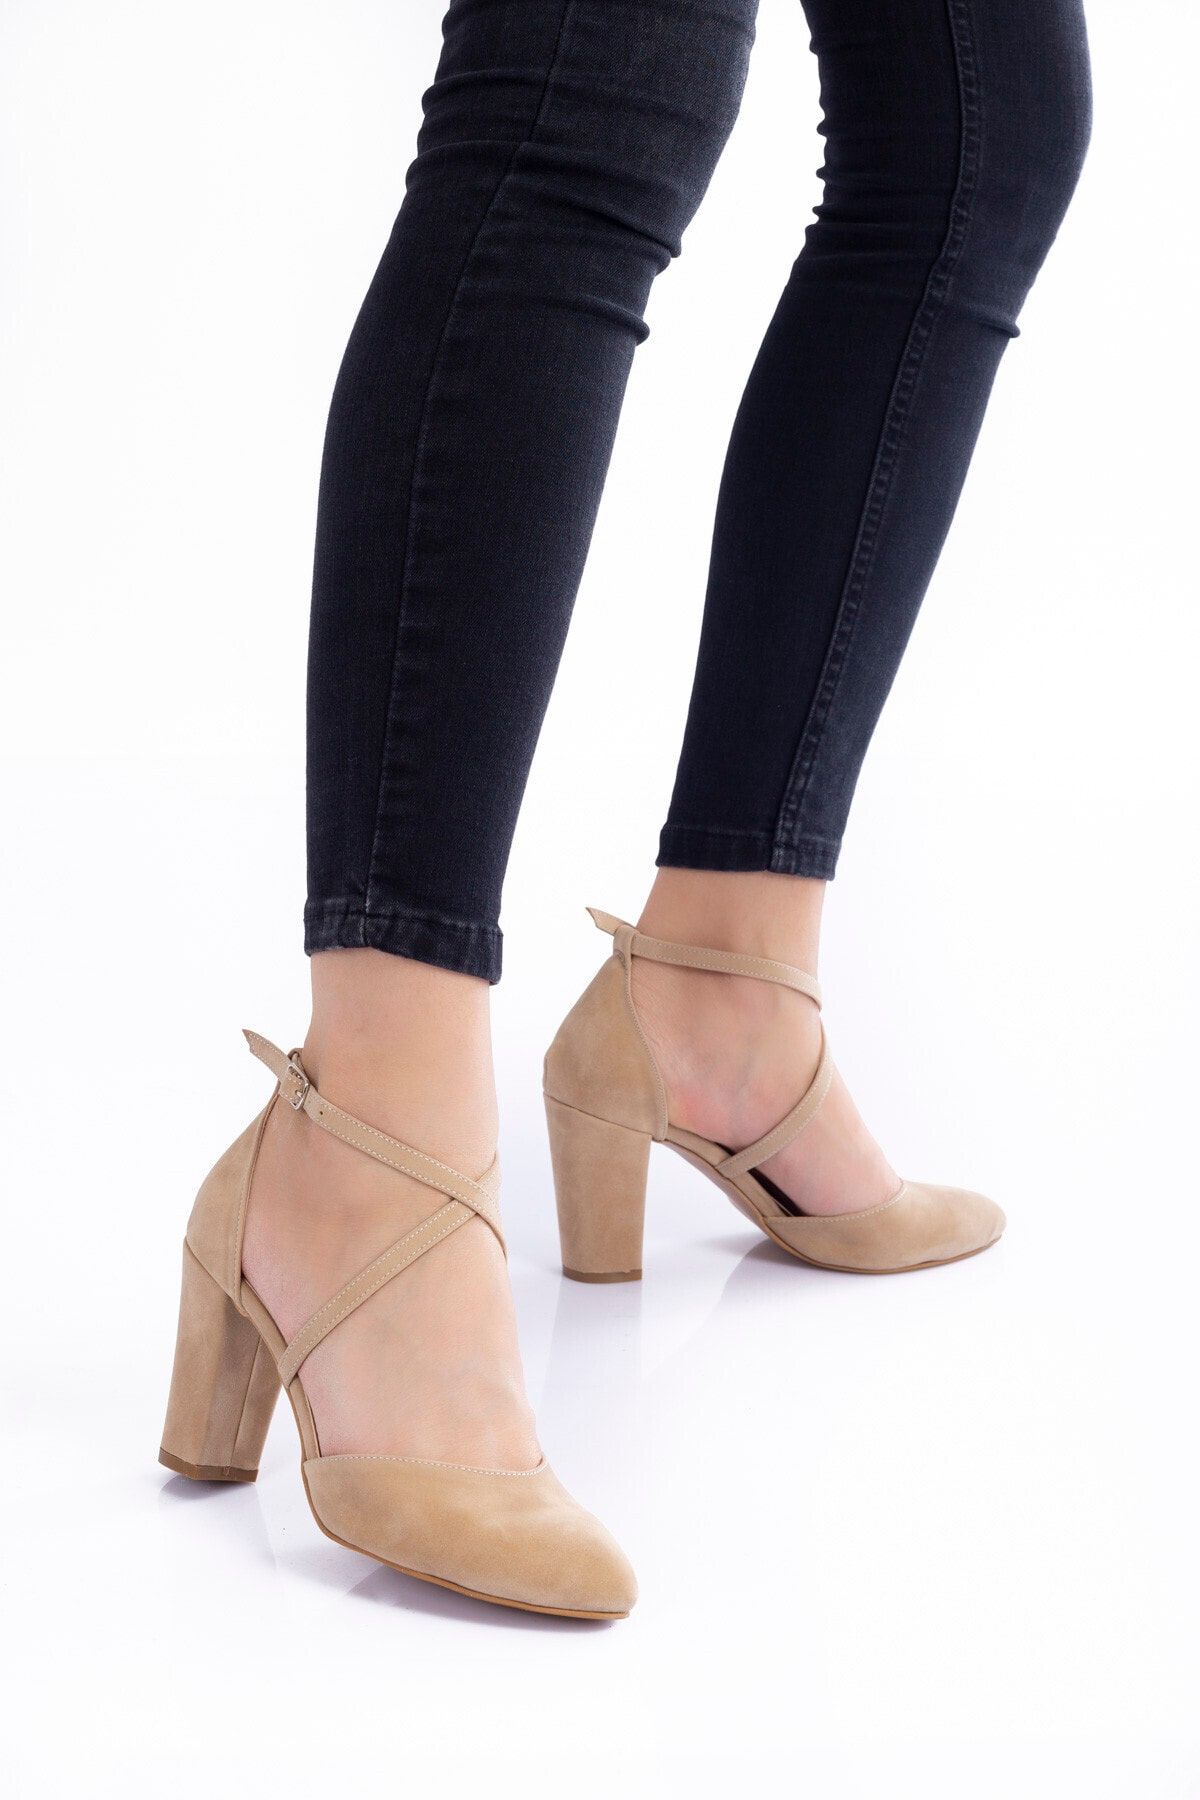 Çnr&Dvs Vizon Süet Topuklu Kadın Klasik Ayakkabı 1310cnr